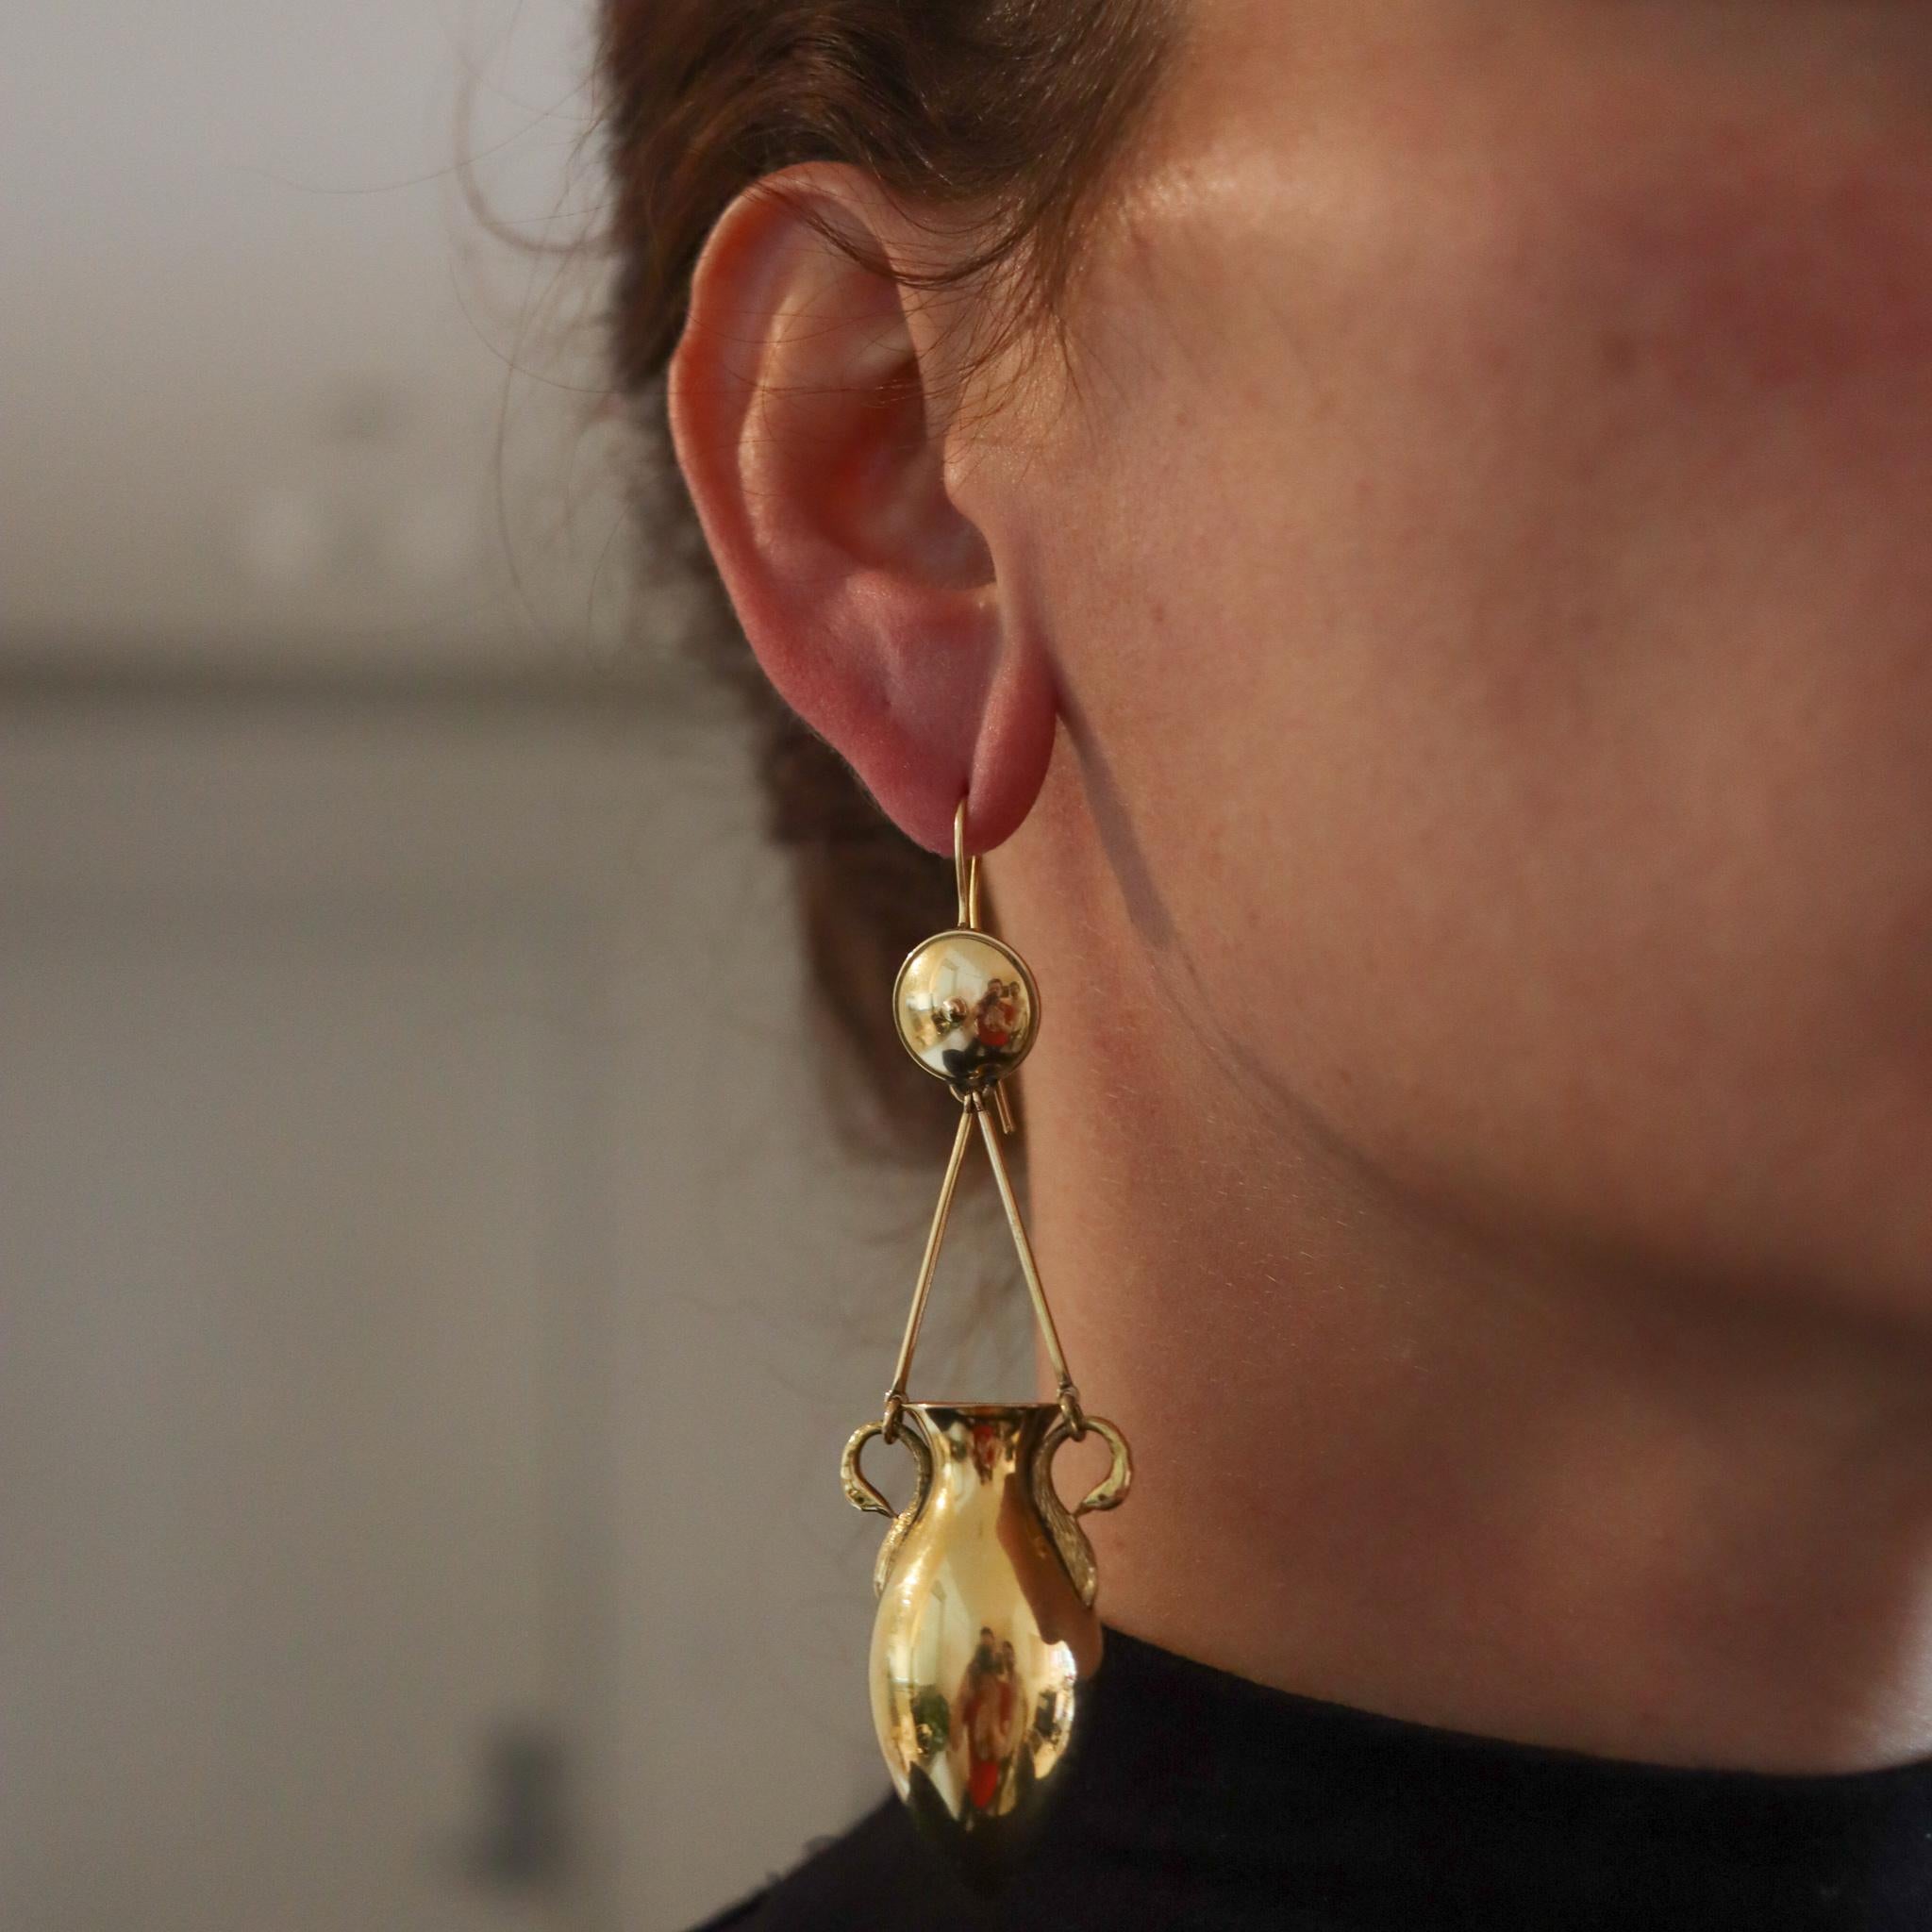 Etruskisch-römische Ohrringe mit Anhängern der Wiedergeburt.

Prächtige übergroße Tropfenohrringe aus dem Viktorianischen Zeitalter (1837-1901) um 1880. Dieses schöne Paar wurde mit etruskisch-römischen Mustern aus massivem 18-karätigem Gelbgold